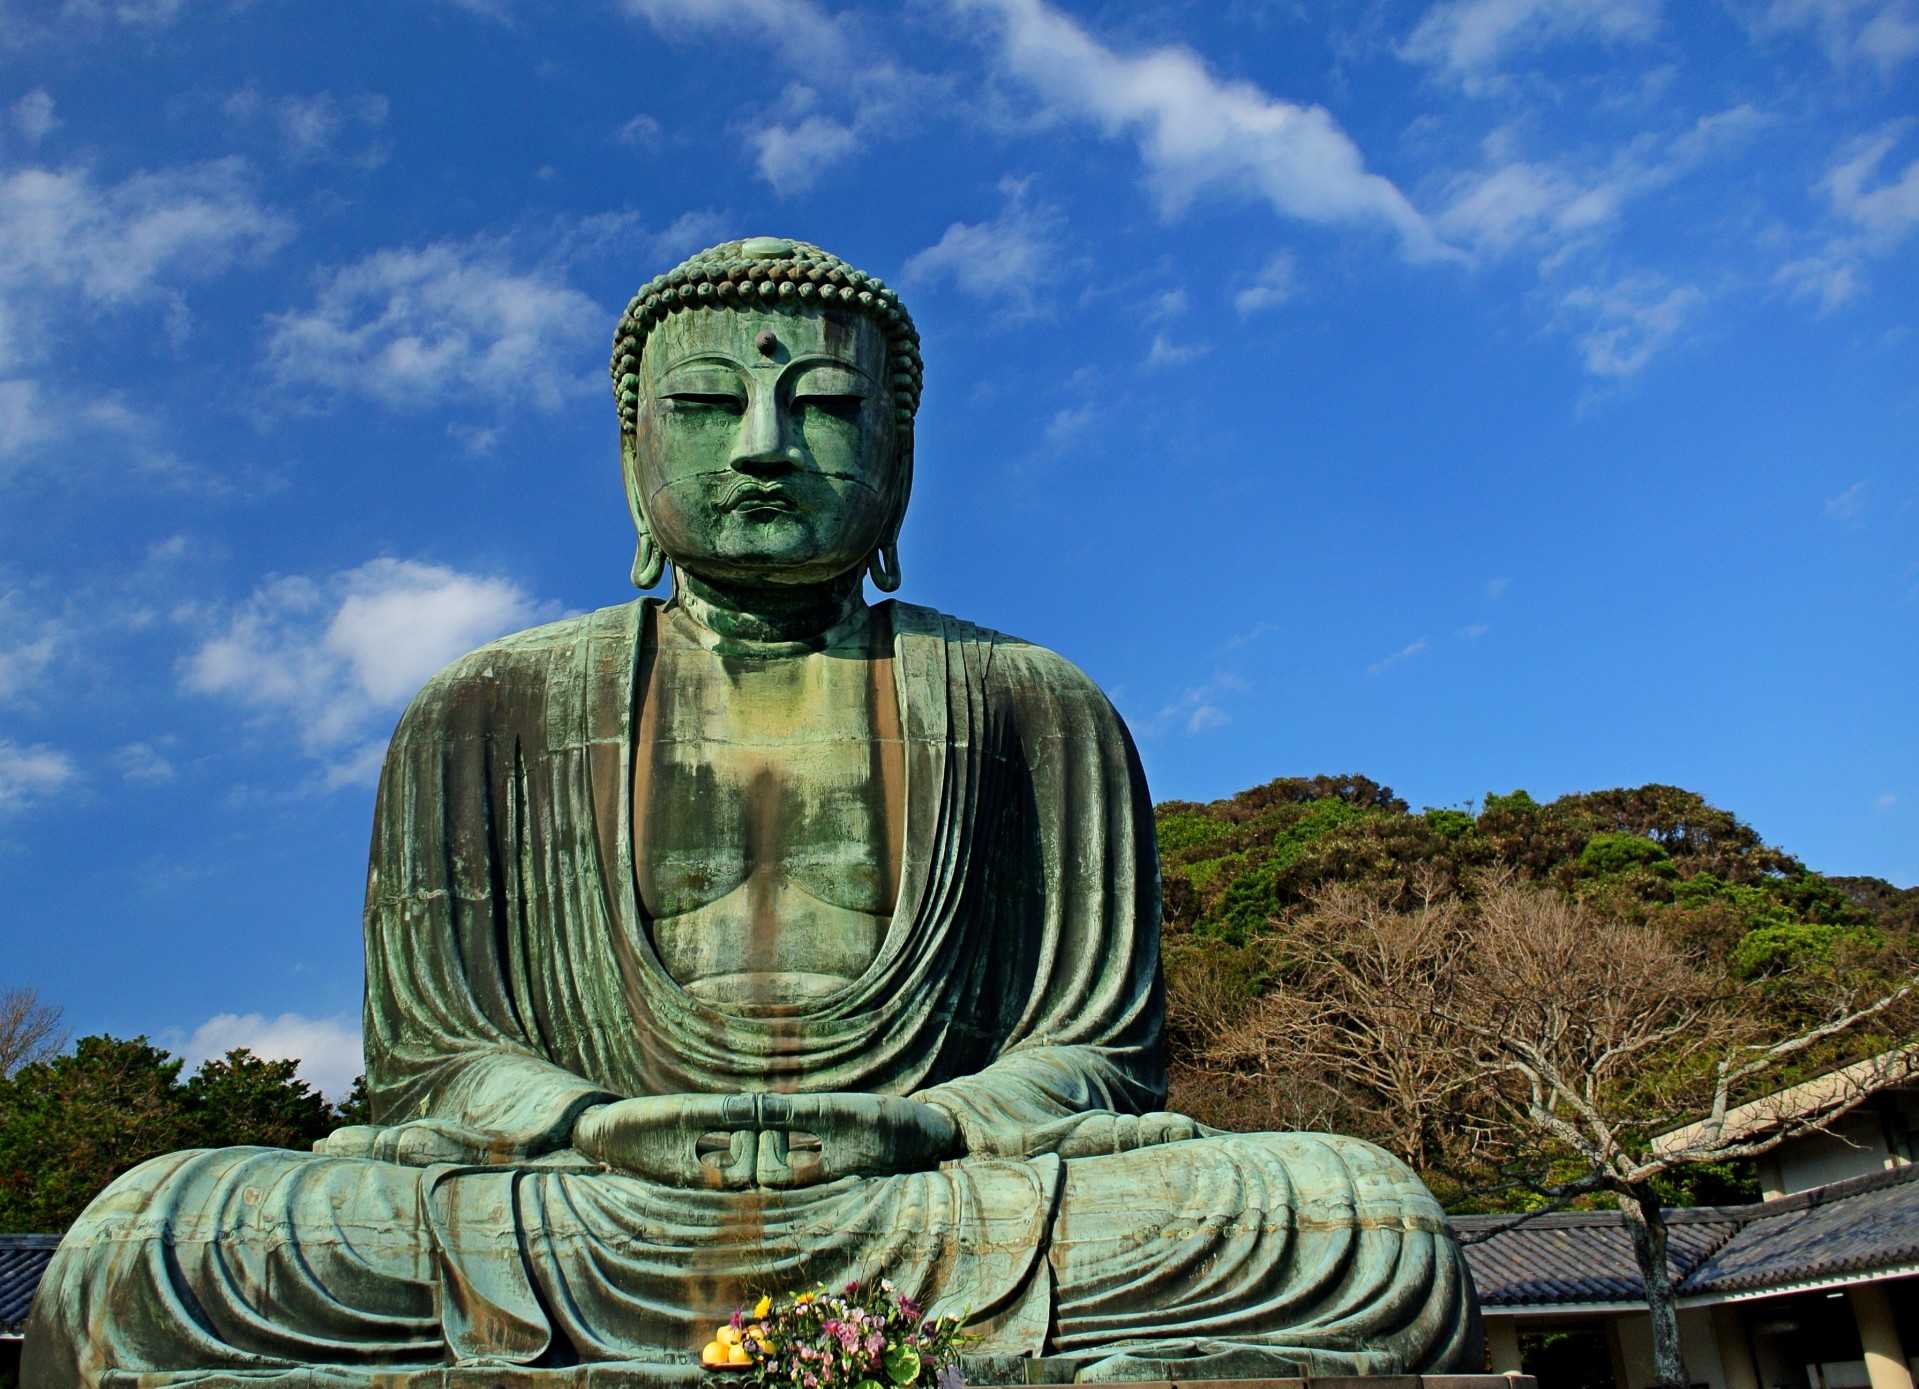 Bronze statue of Buddha at Kamakura, Japan